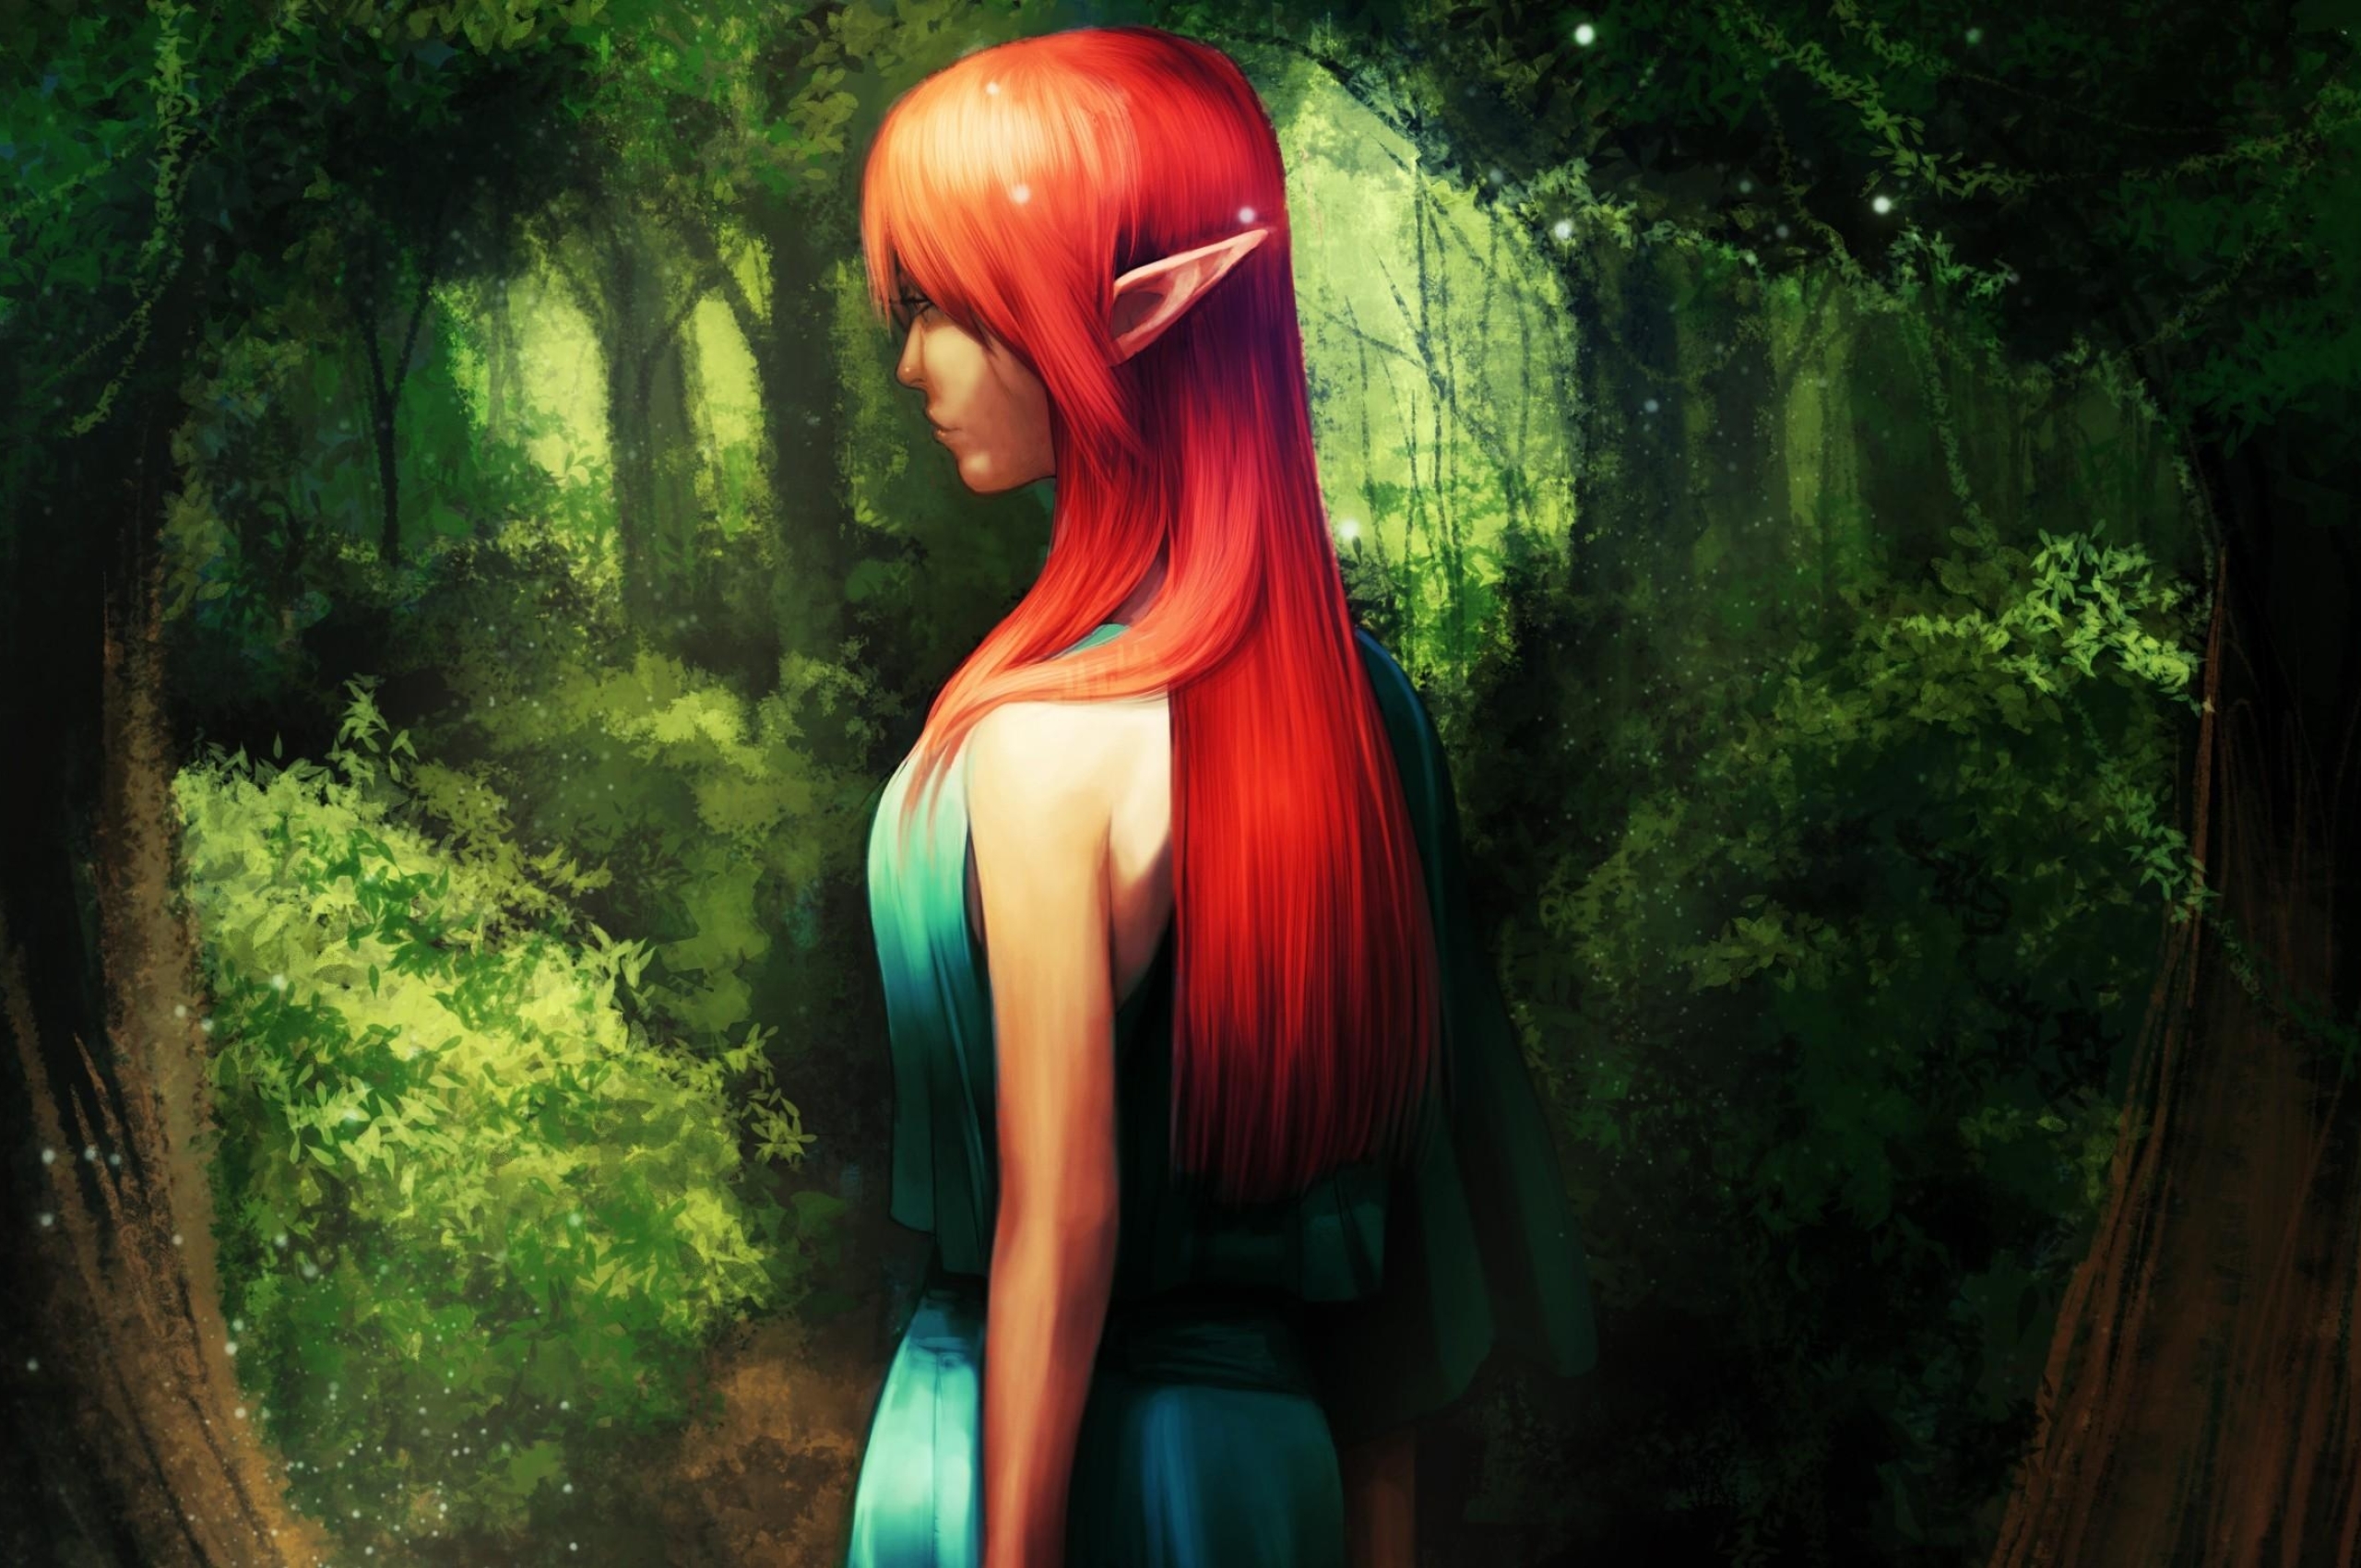 Вивальди эльфийская. Эльф с красными волосами. Девушка с рыжими волосами. Эльфийка с красными волосами. Эльфийка с рыжими волосами.